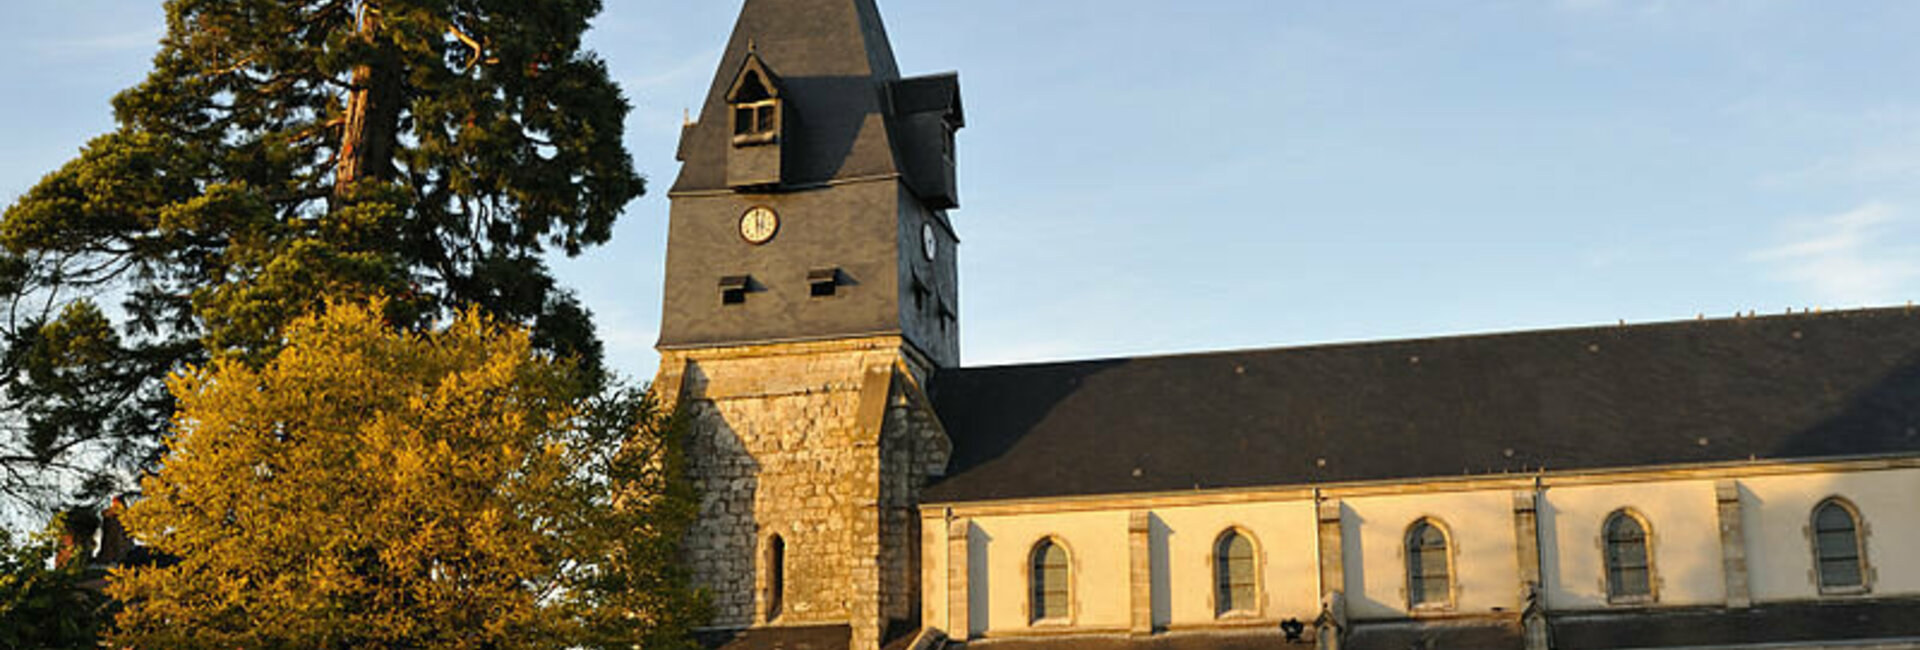 Site officiel de la Mairie et commune de Aschères-le-marché (45) loiret